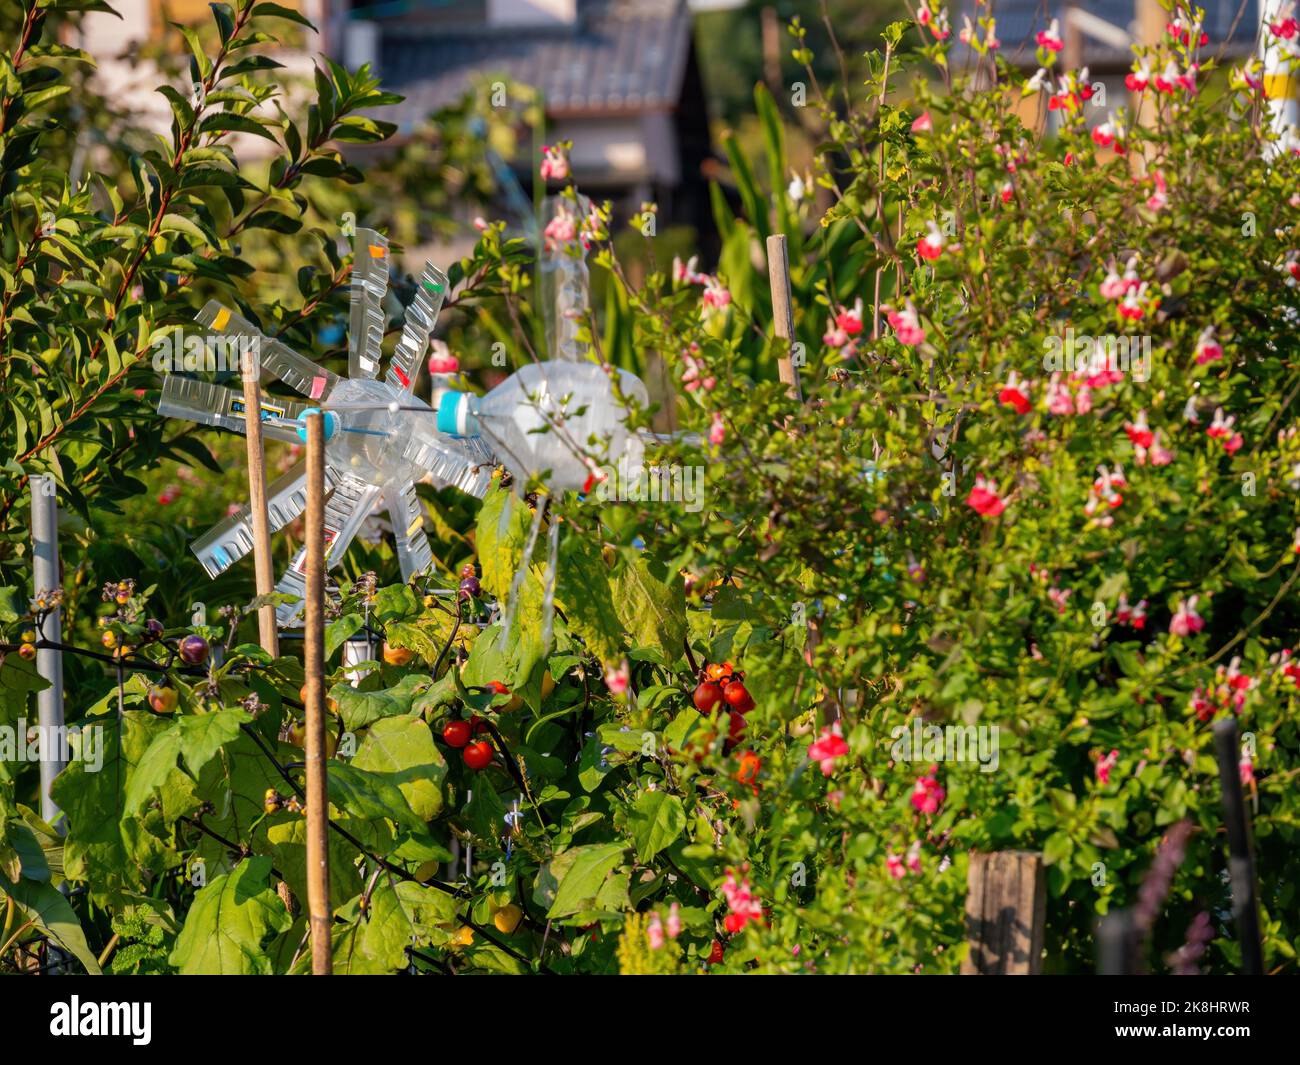 Nahaufnahme einer kleinen Farm mit Blumenblüten und reifen Tomaten, die in Kyto hängen Stockfoto